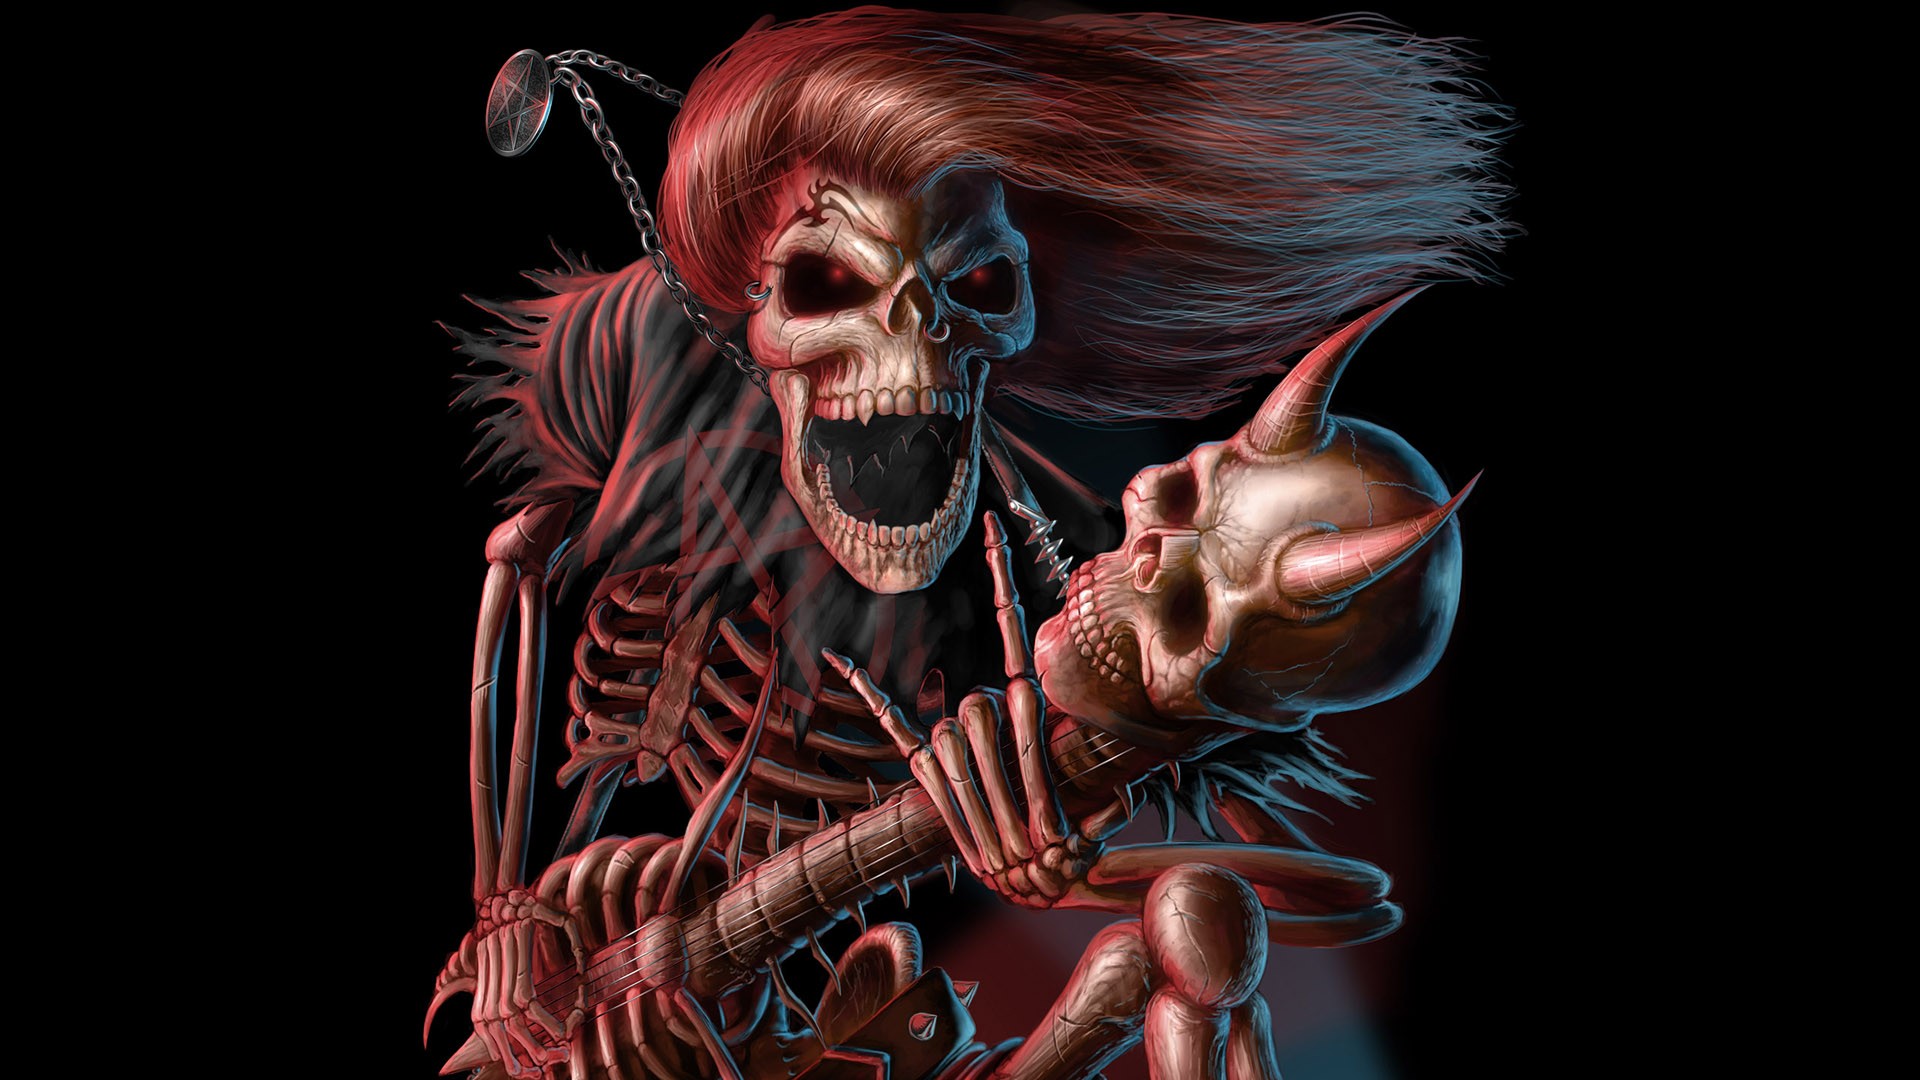 Download the Metal Head Skeleton Wallpaper, Metal Head Skeleton